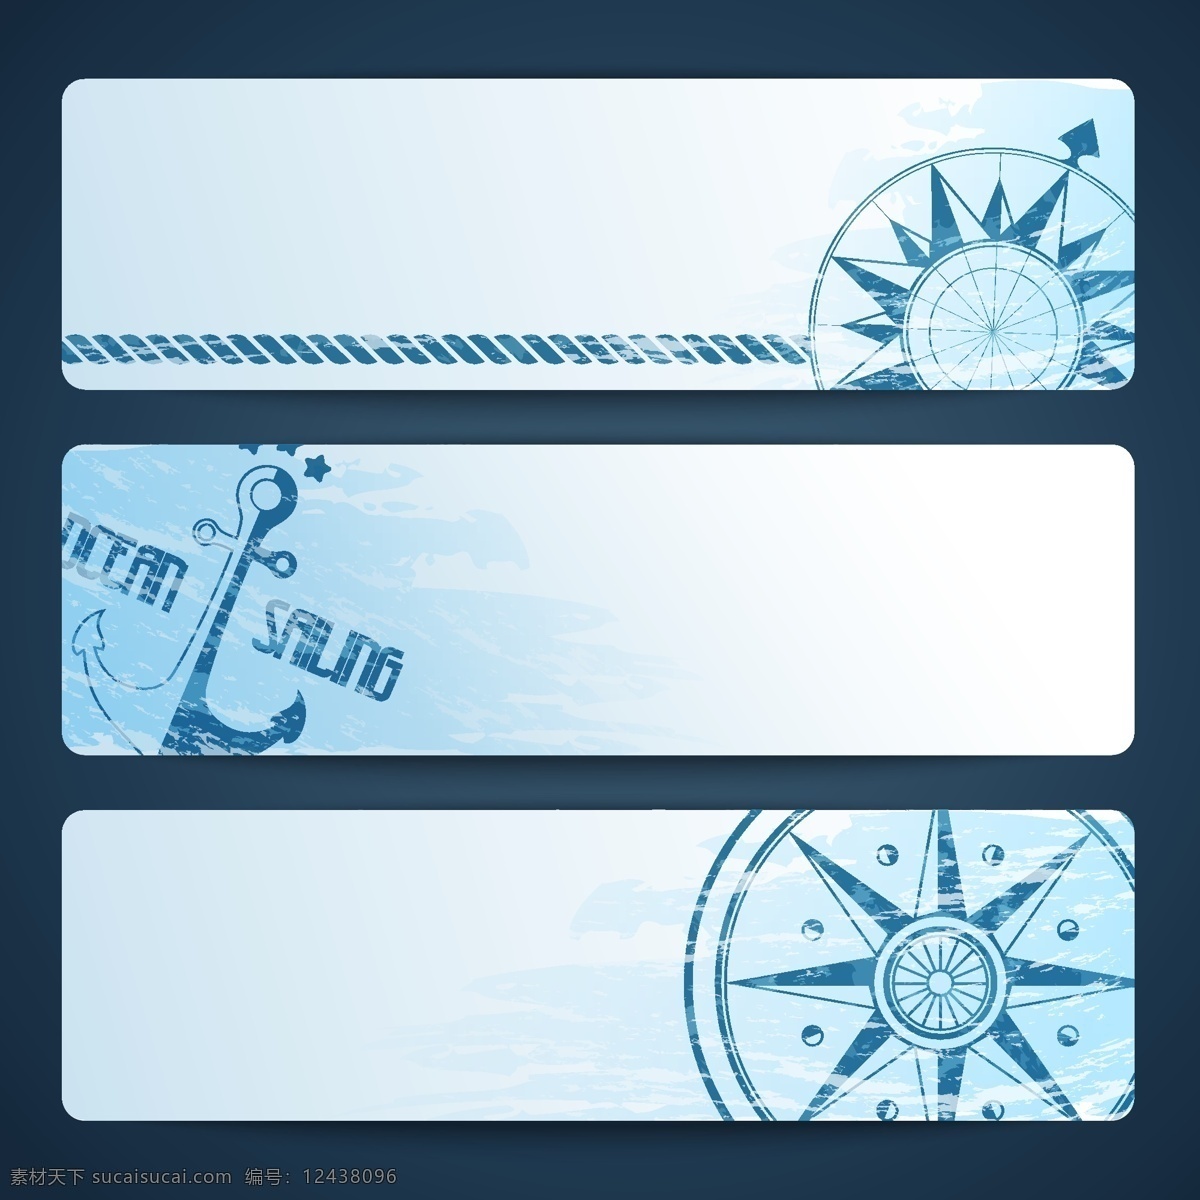 海洋 系列 背景 海洋图标 个性图标 立体图标 图标 大海 船 指南针 按钮图标 标志图标 背景素材 矢量素材 底纹边框 白色